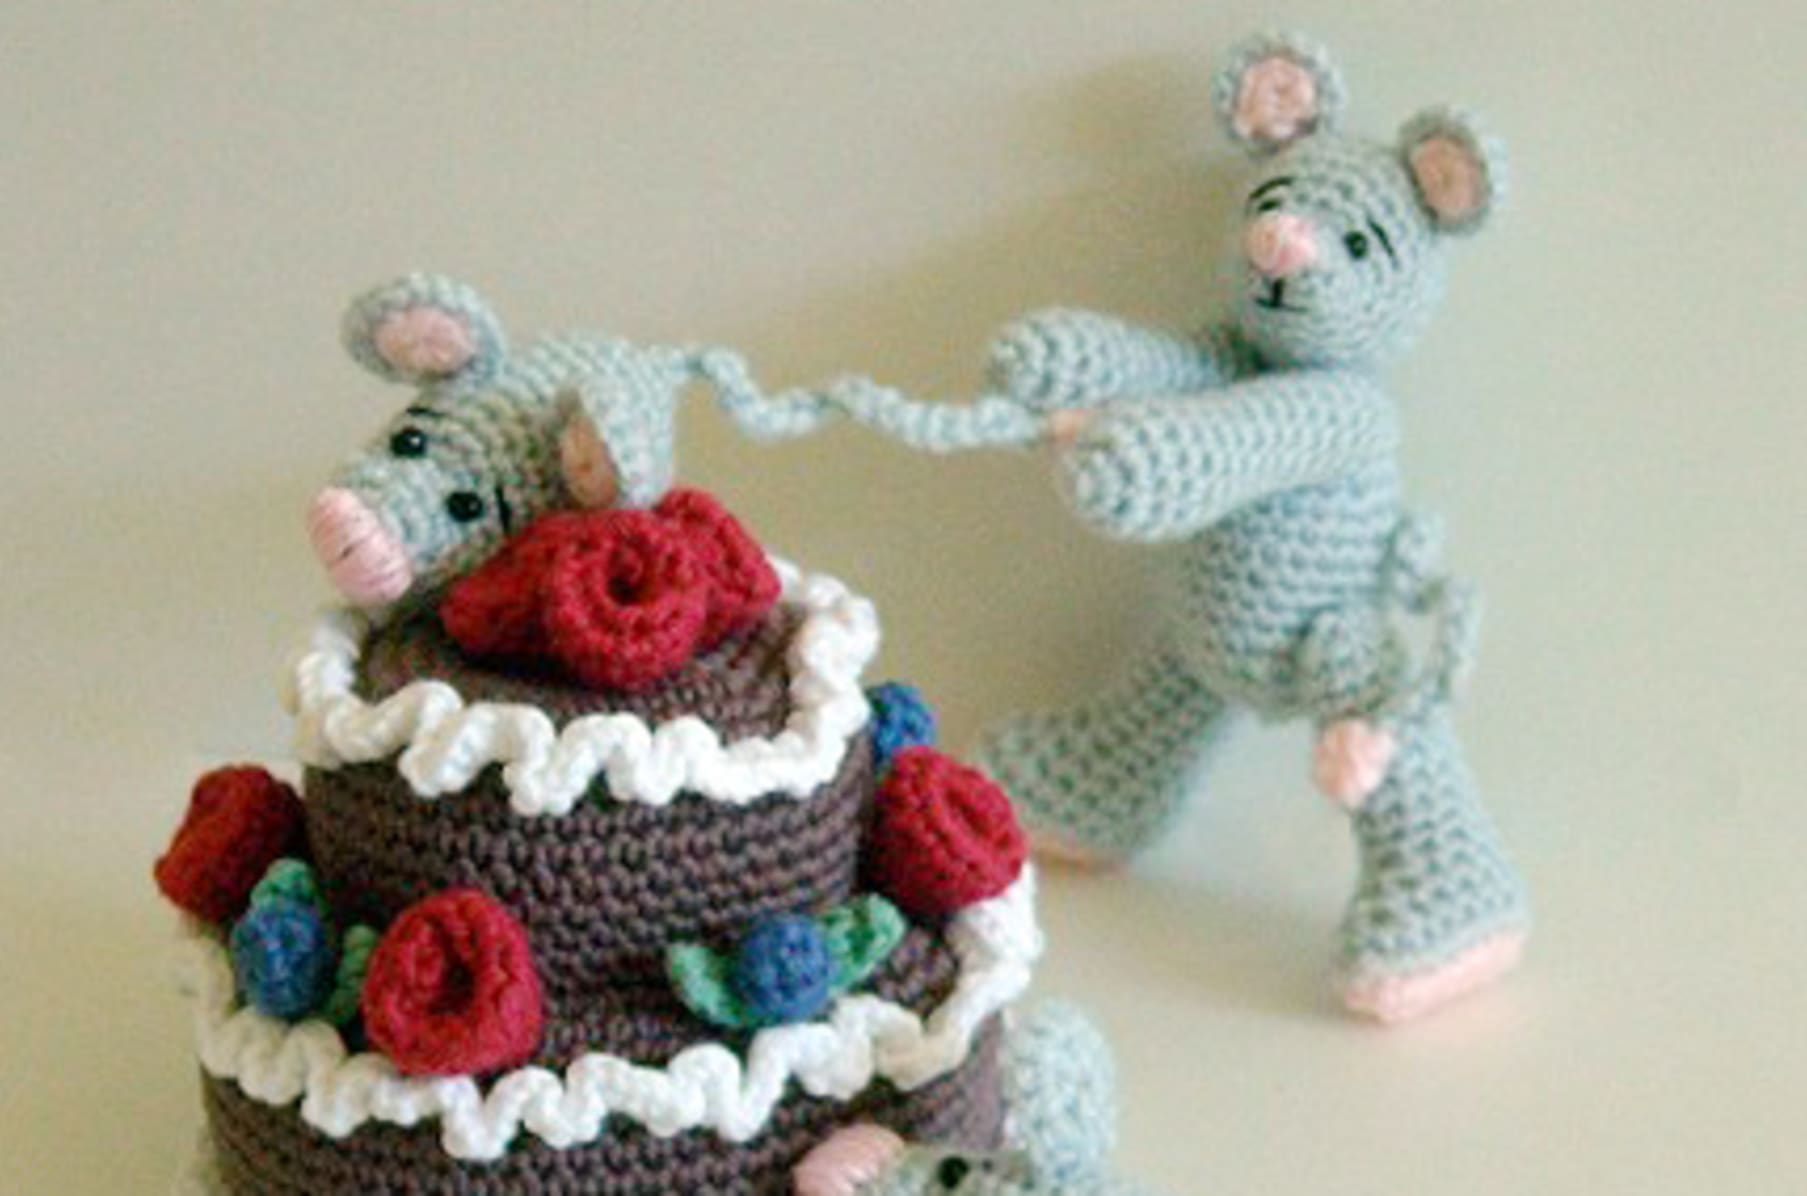 Zoomigurumi 6 15 Adorable Amigurumi Crochet Patterns in This PDF Book 